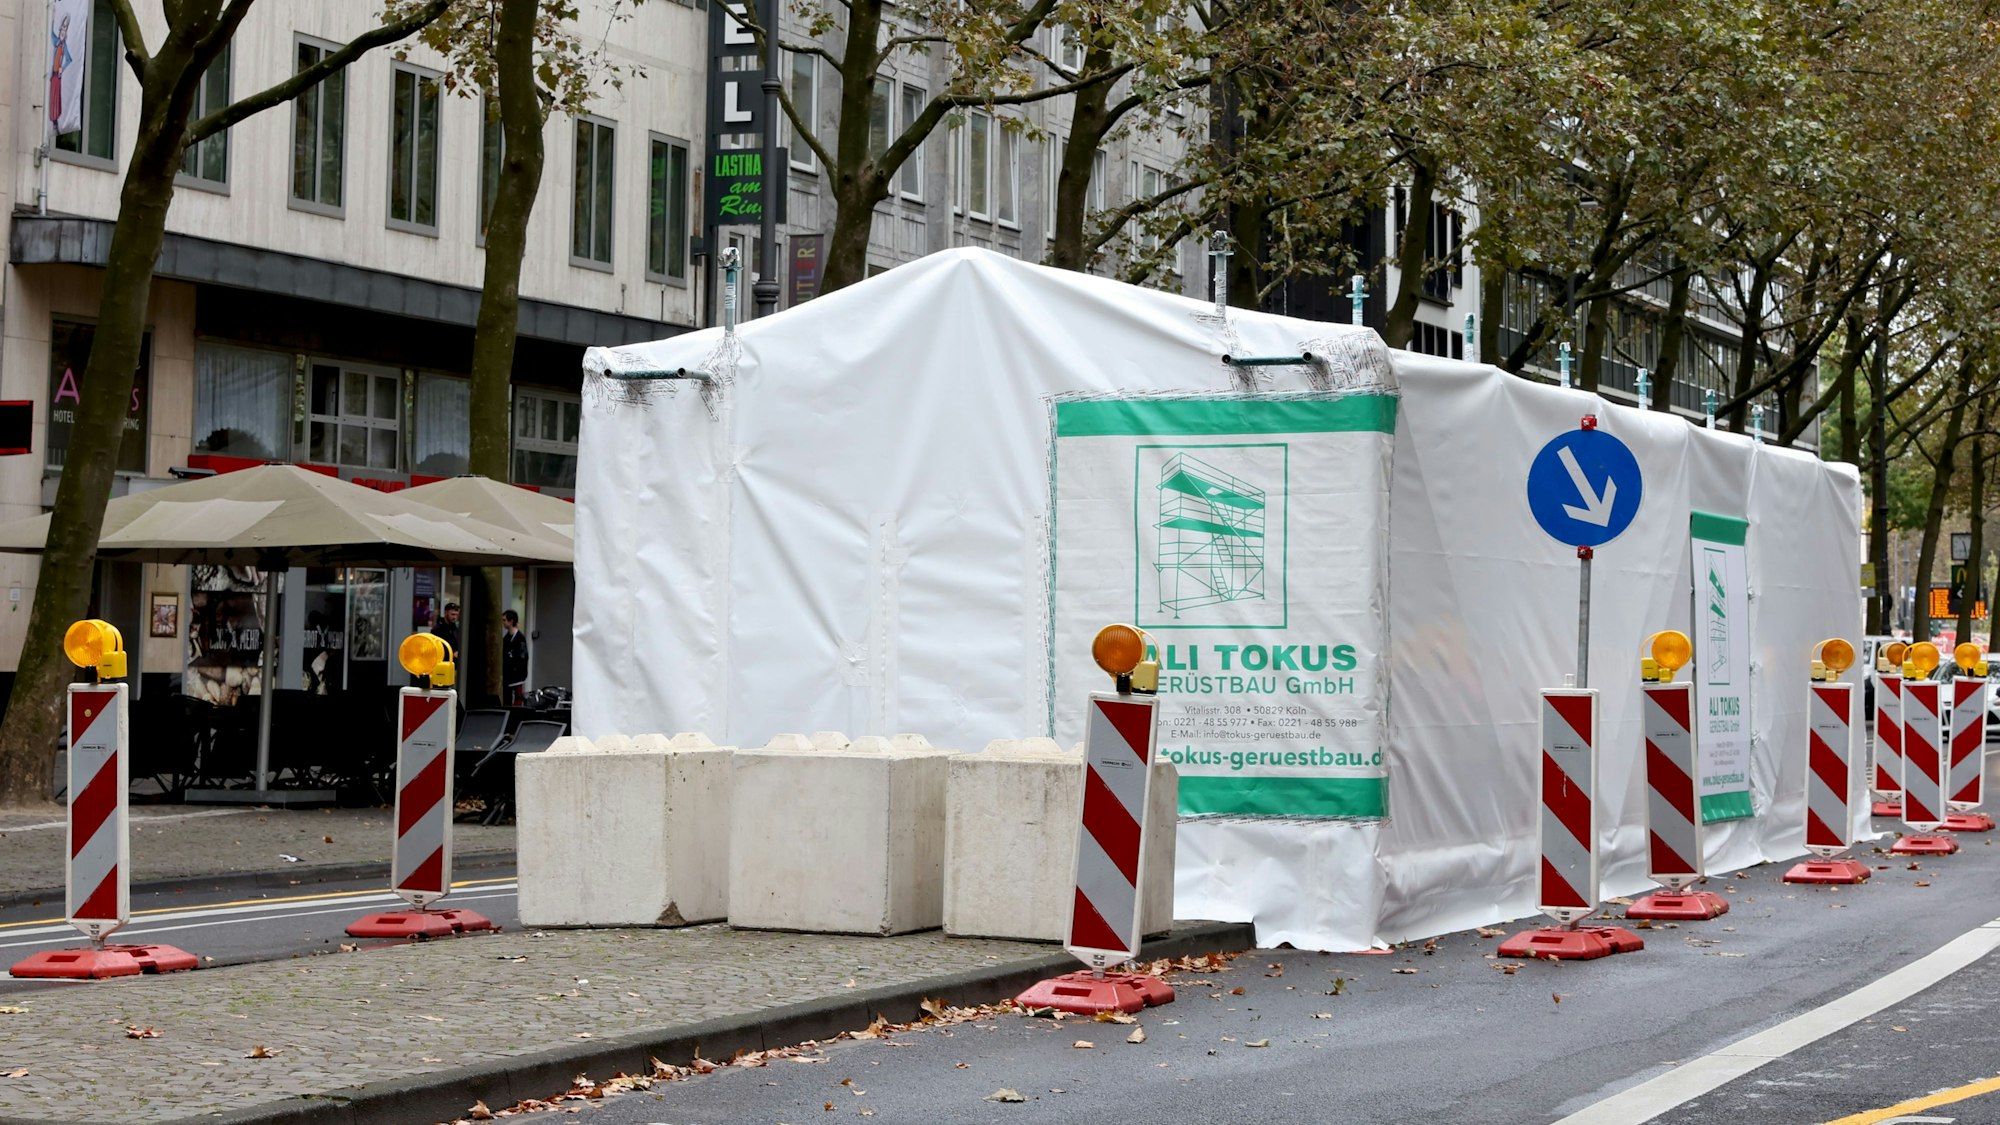 Das Betonauto auf den Kölner Ringen wird saniert und ist unter einem Zelt versteckt.

